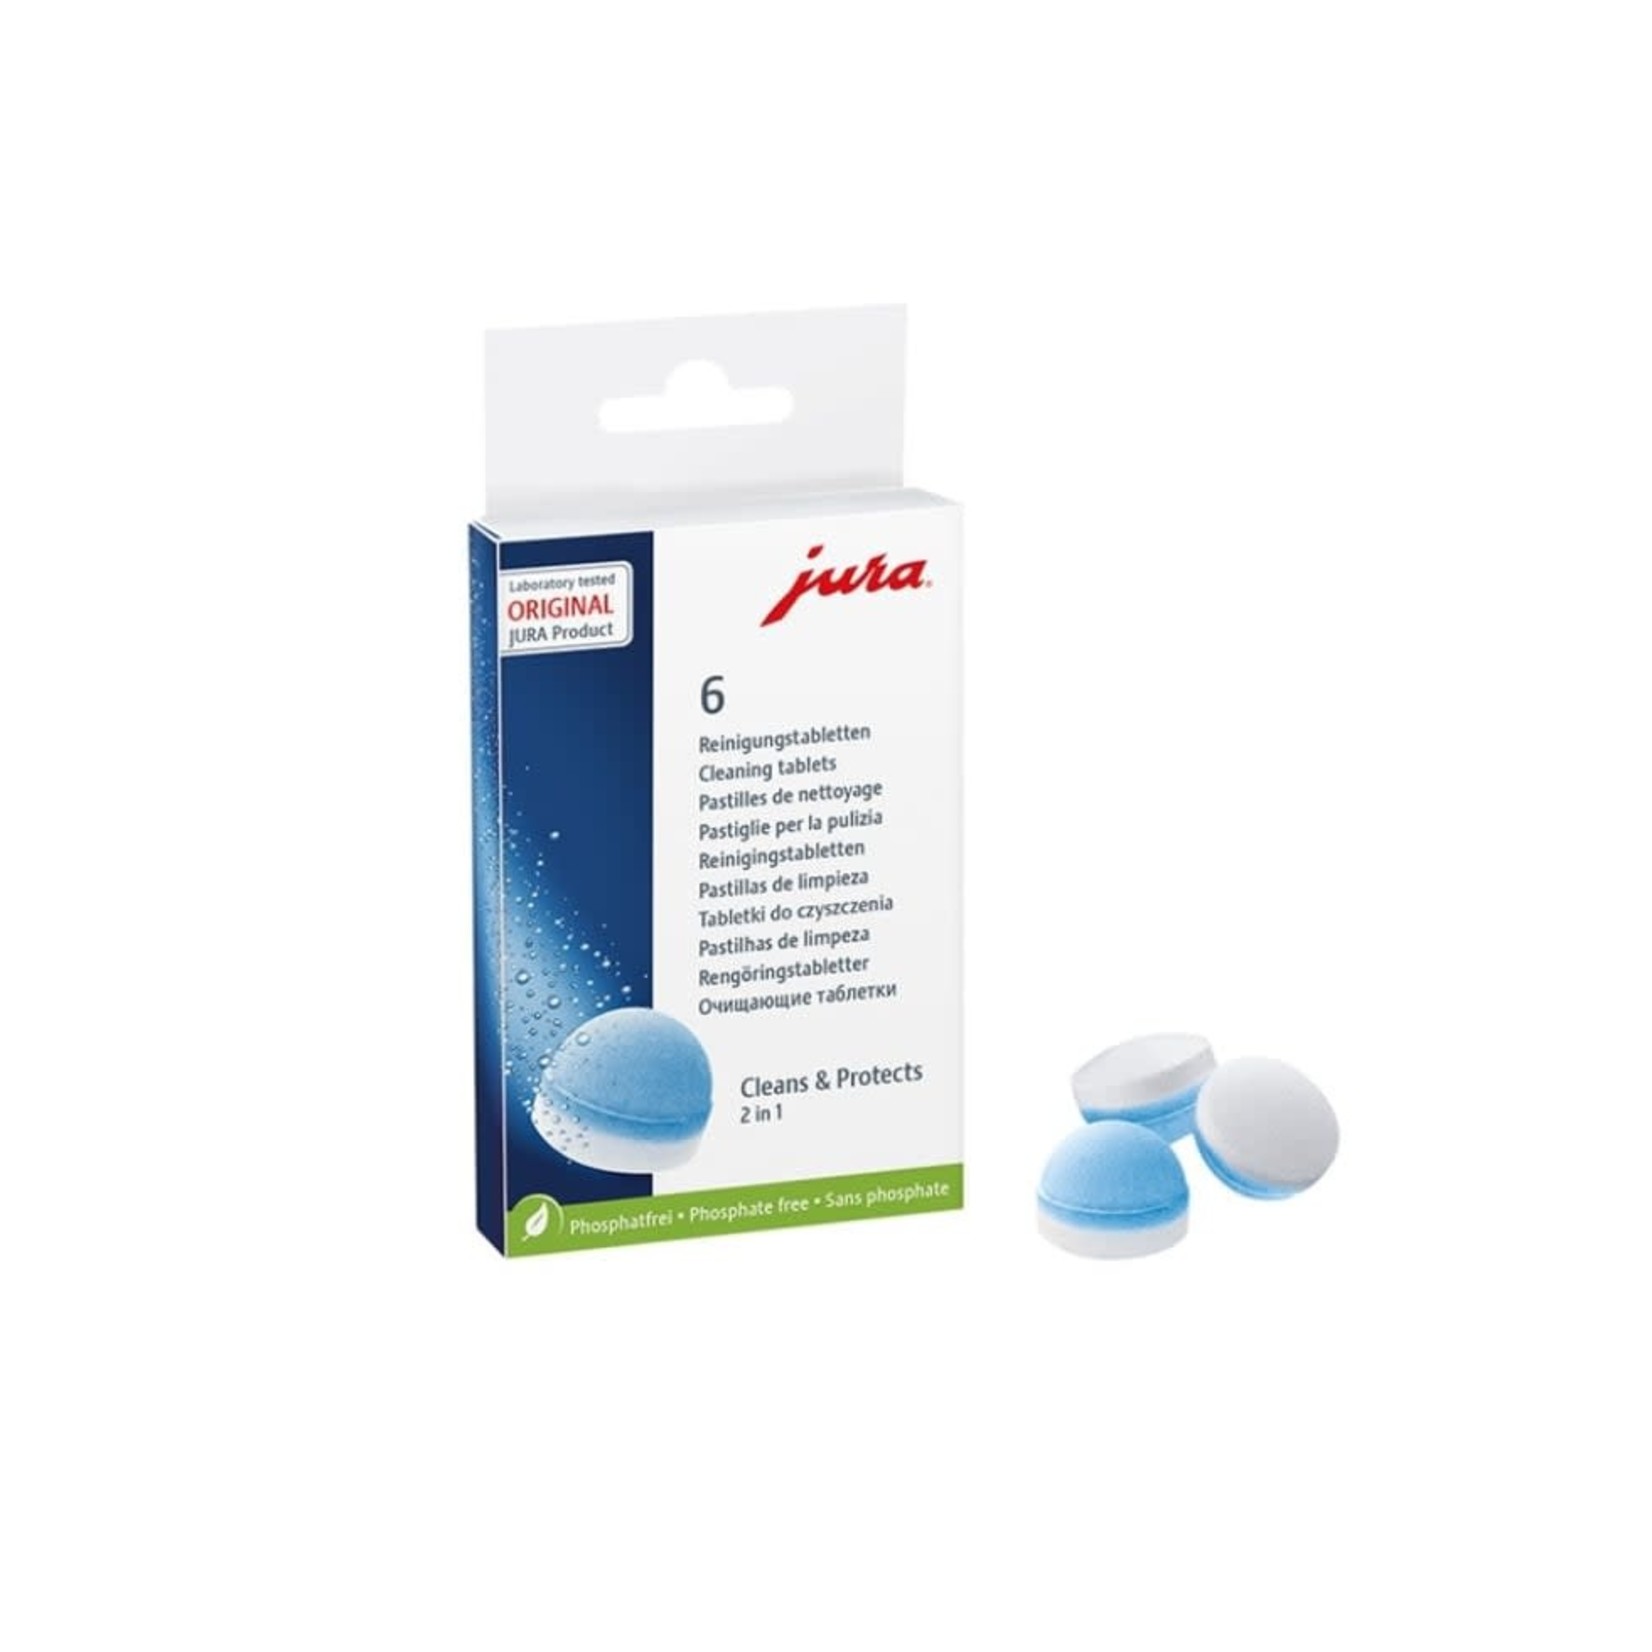 Jura таблетки для чистки. Фильтр воды для кофемашины jura Smart 71793. Jura 24225. Таблетки для чистки кофемашины Юра. Таблетки для чистки гидросистемы jura 6 шт 62715.